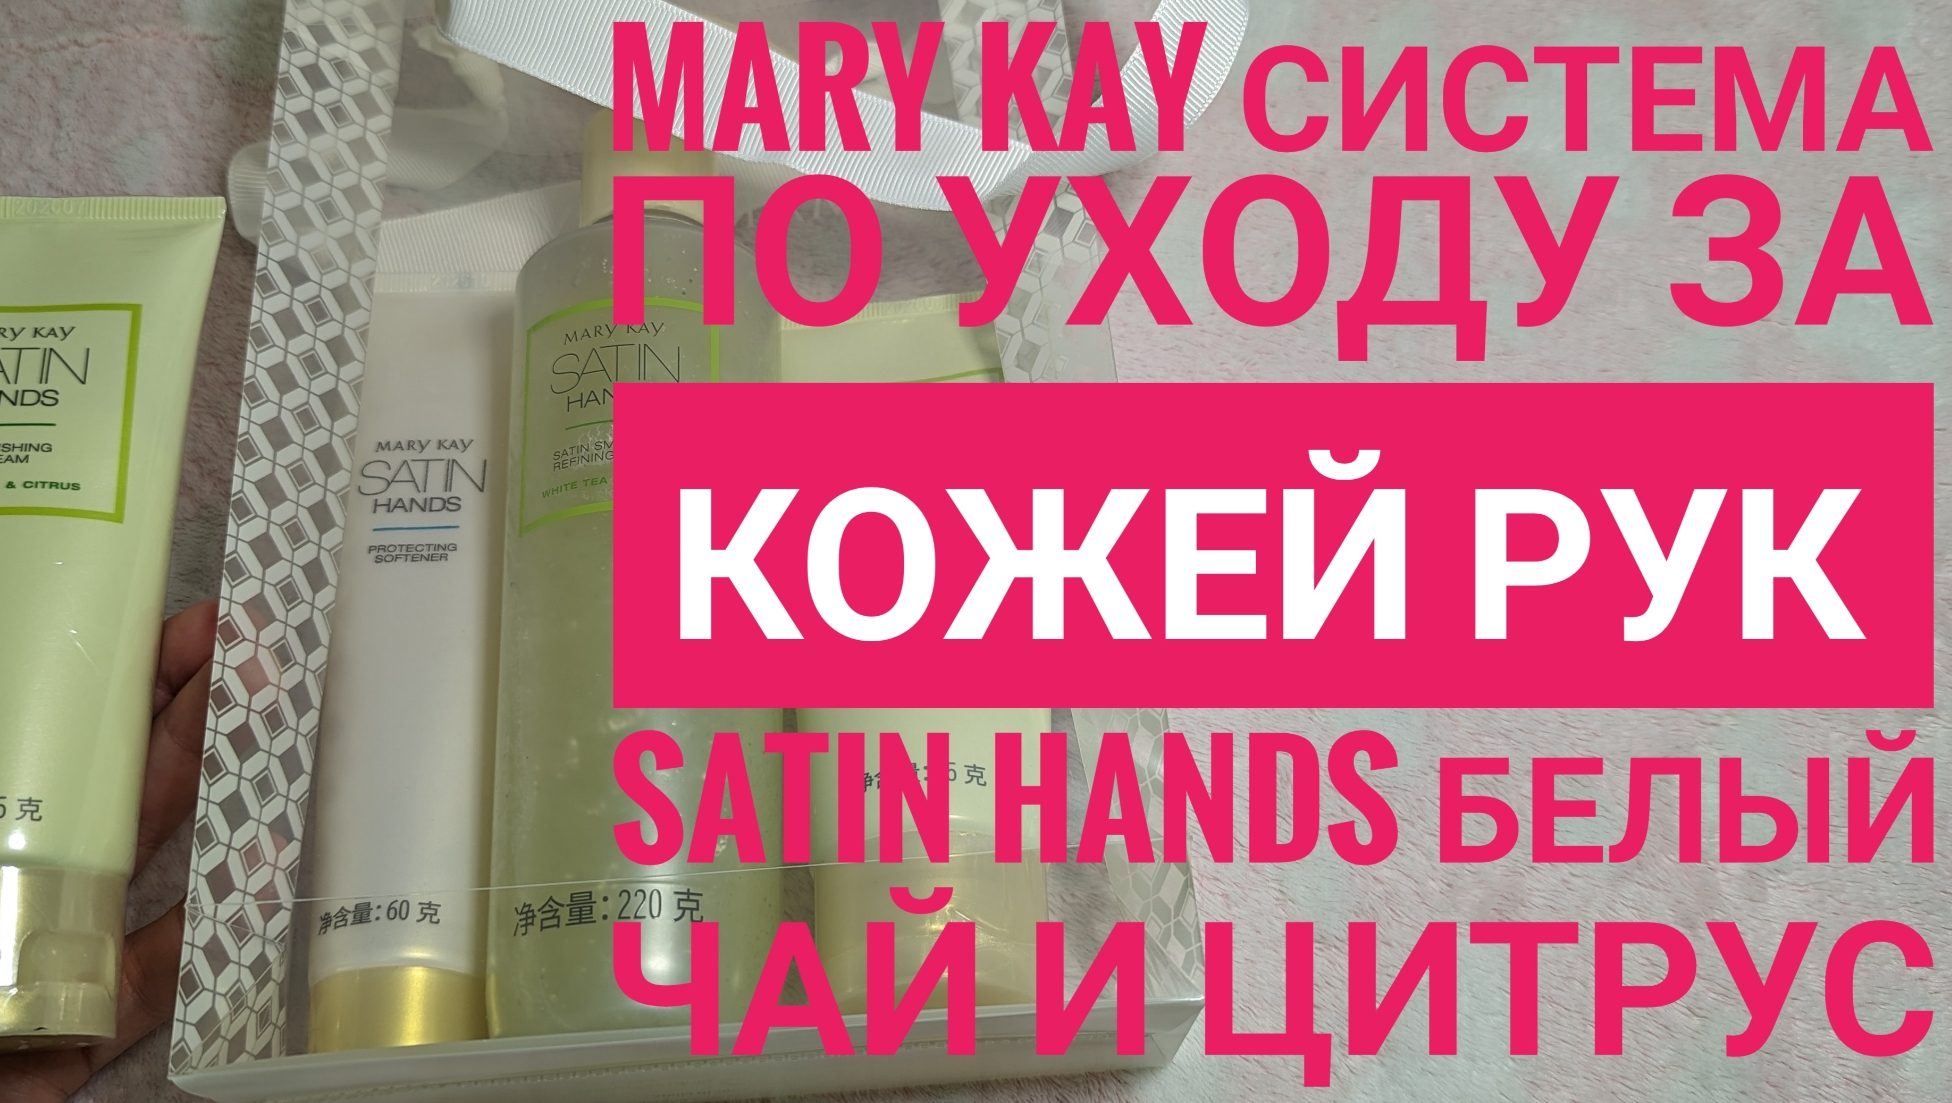 MARY KAY/ Крем для рук и система для рук "Белый чай и цитрус" Satin Hands, обзор 🙌 Мери Кей 💖